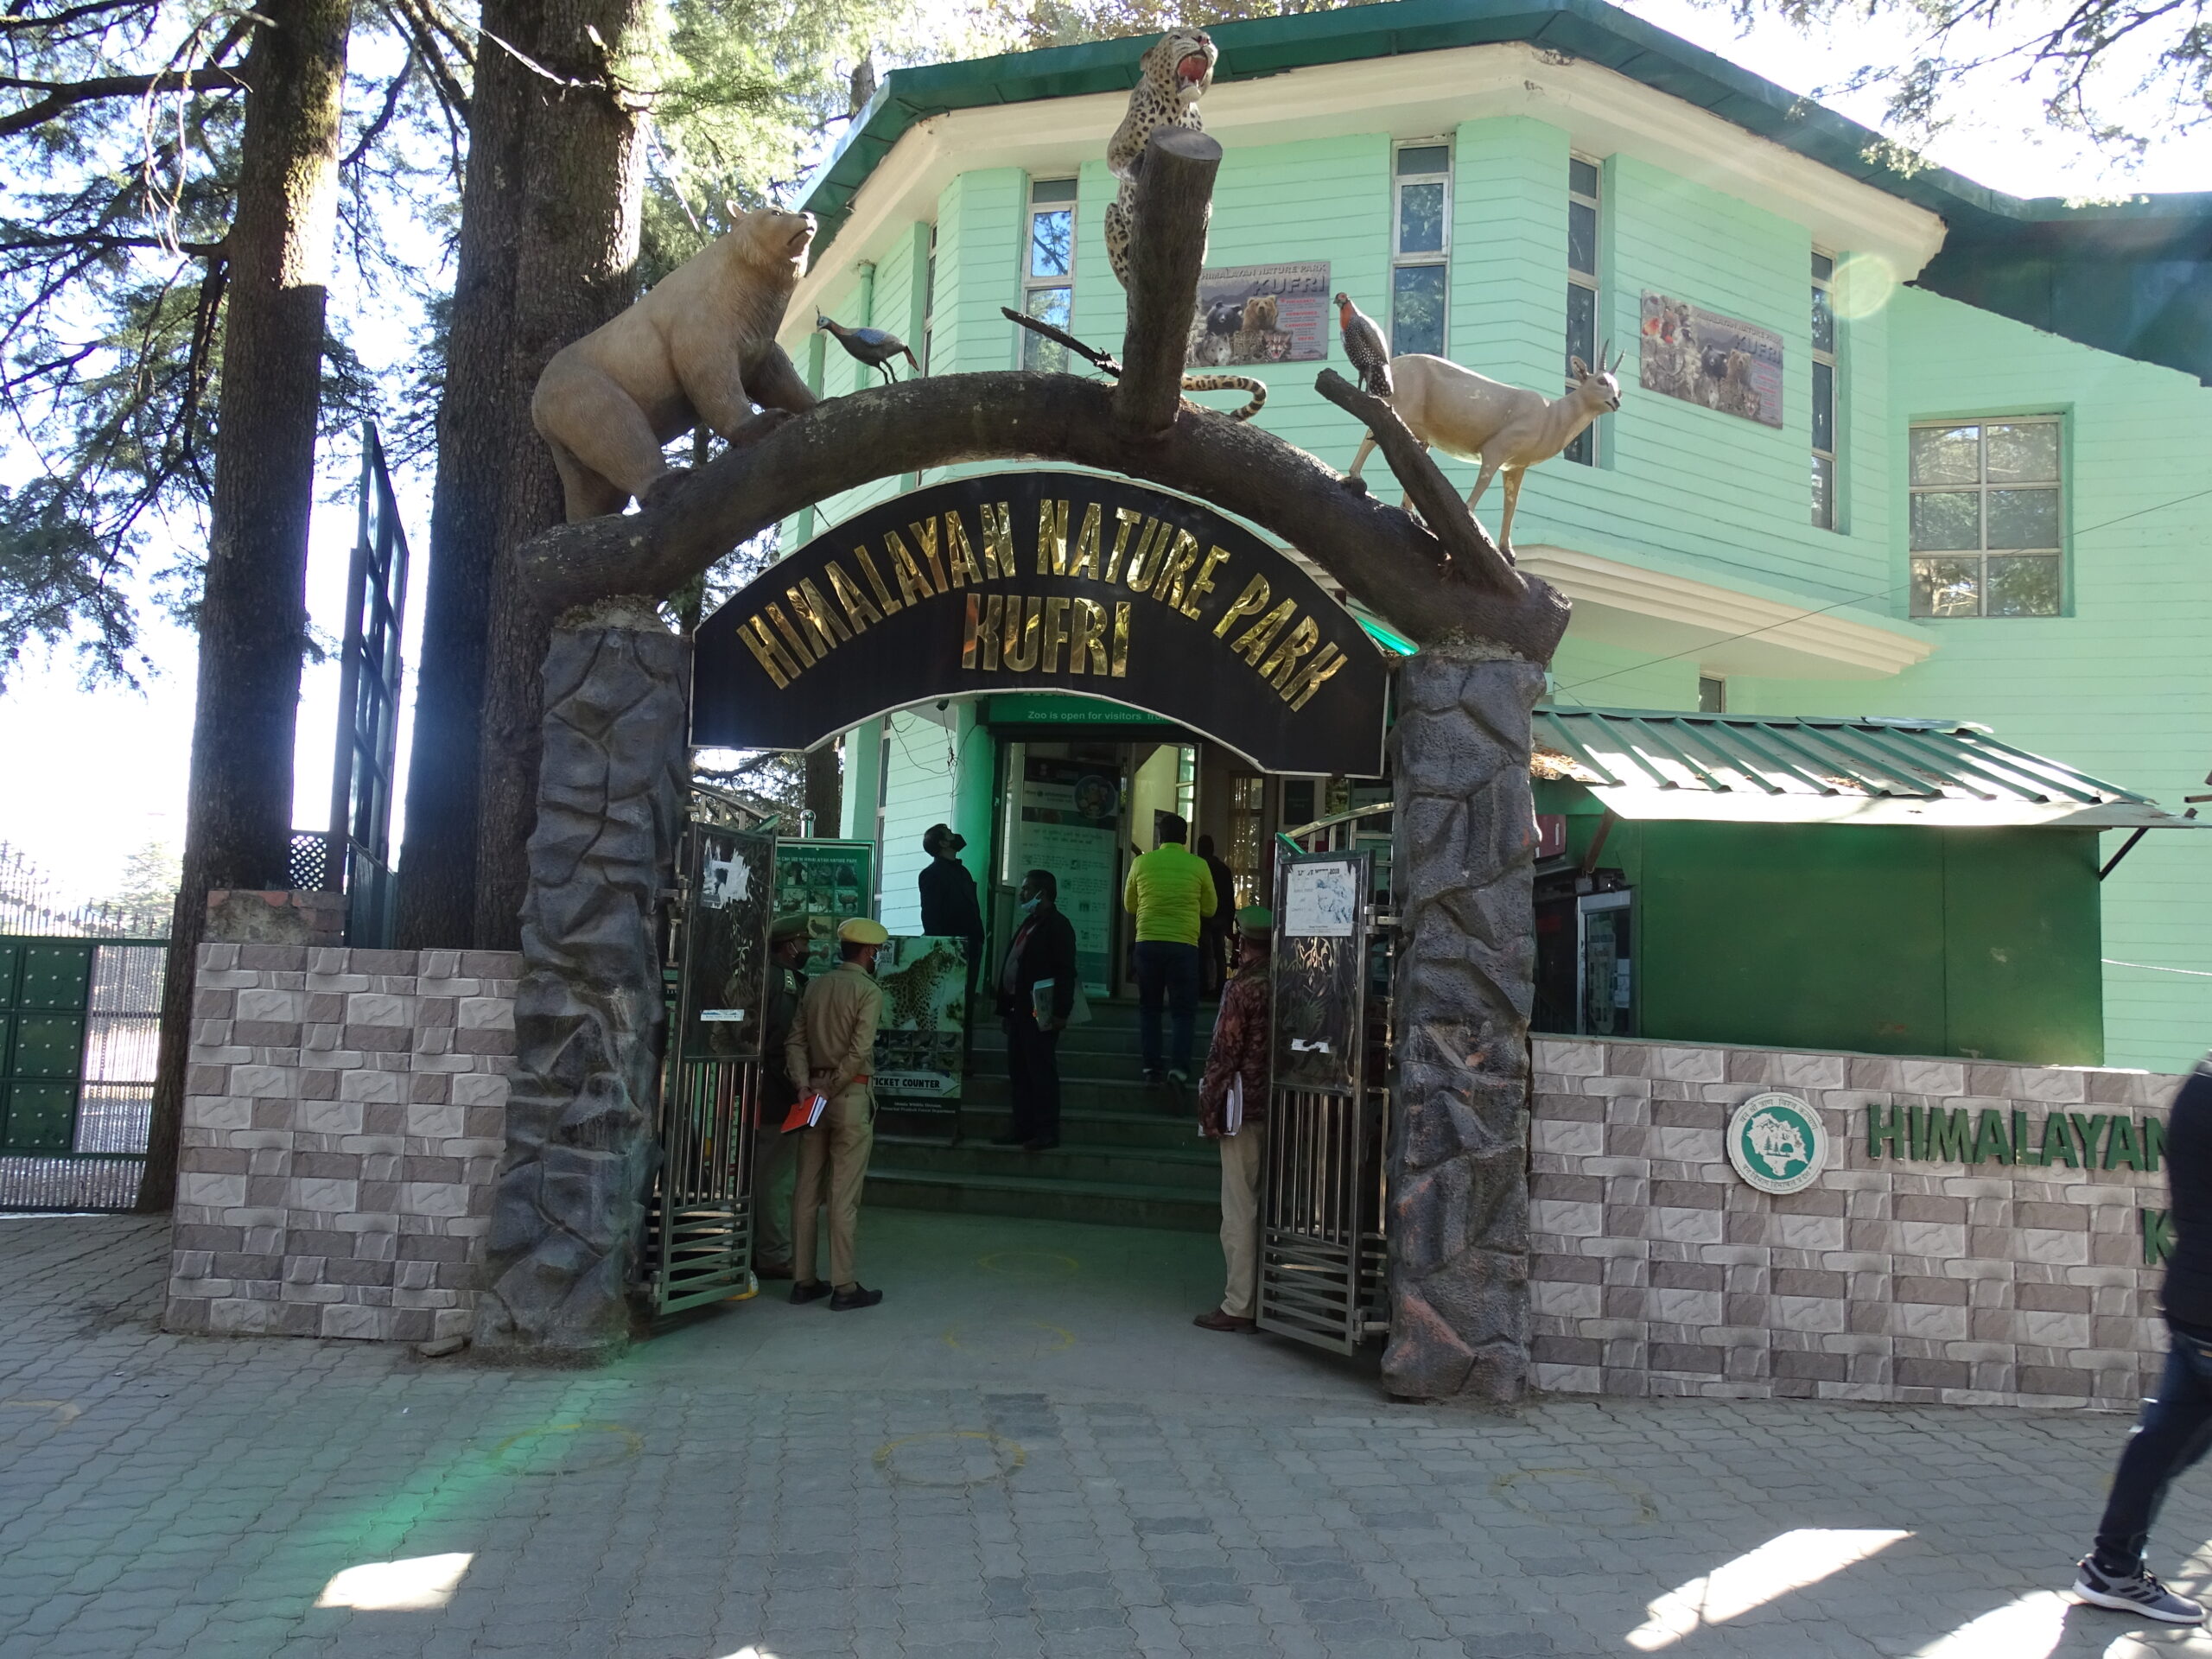 Himalayan Nature Park Kufri (Kufri Zoo)